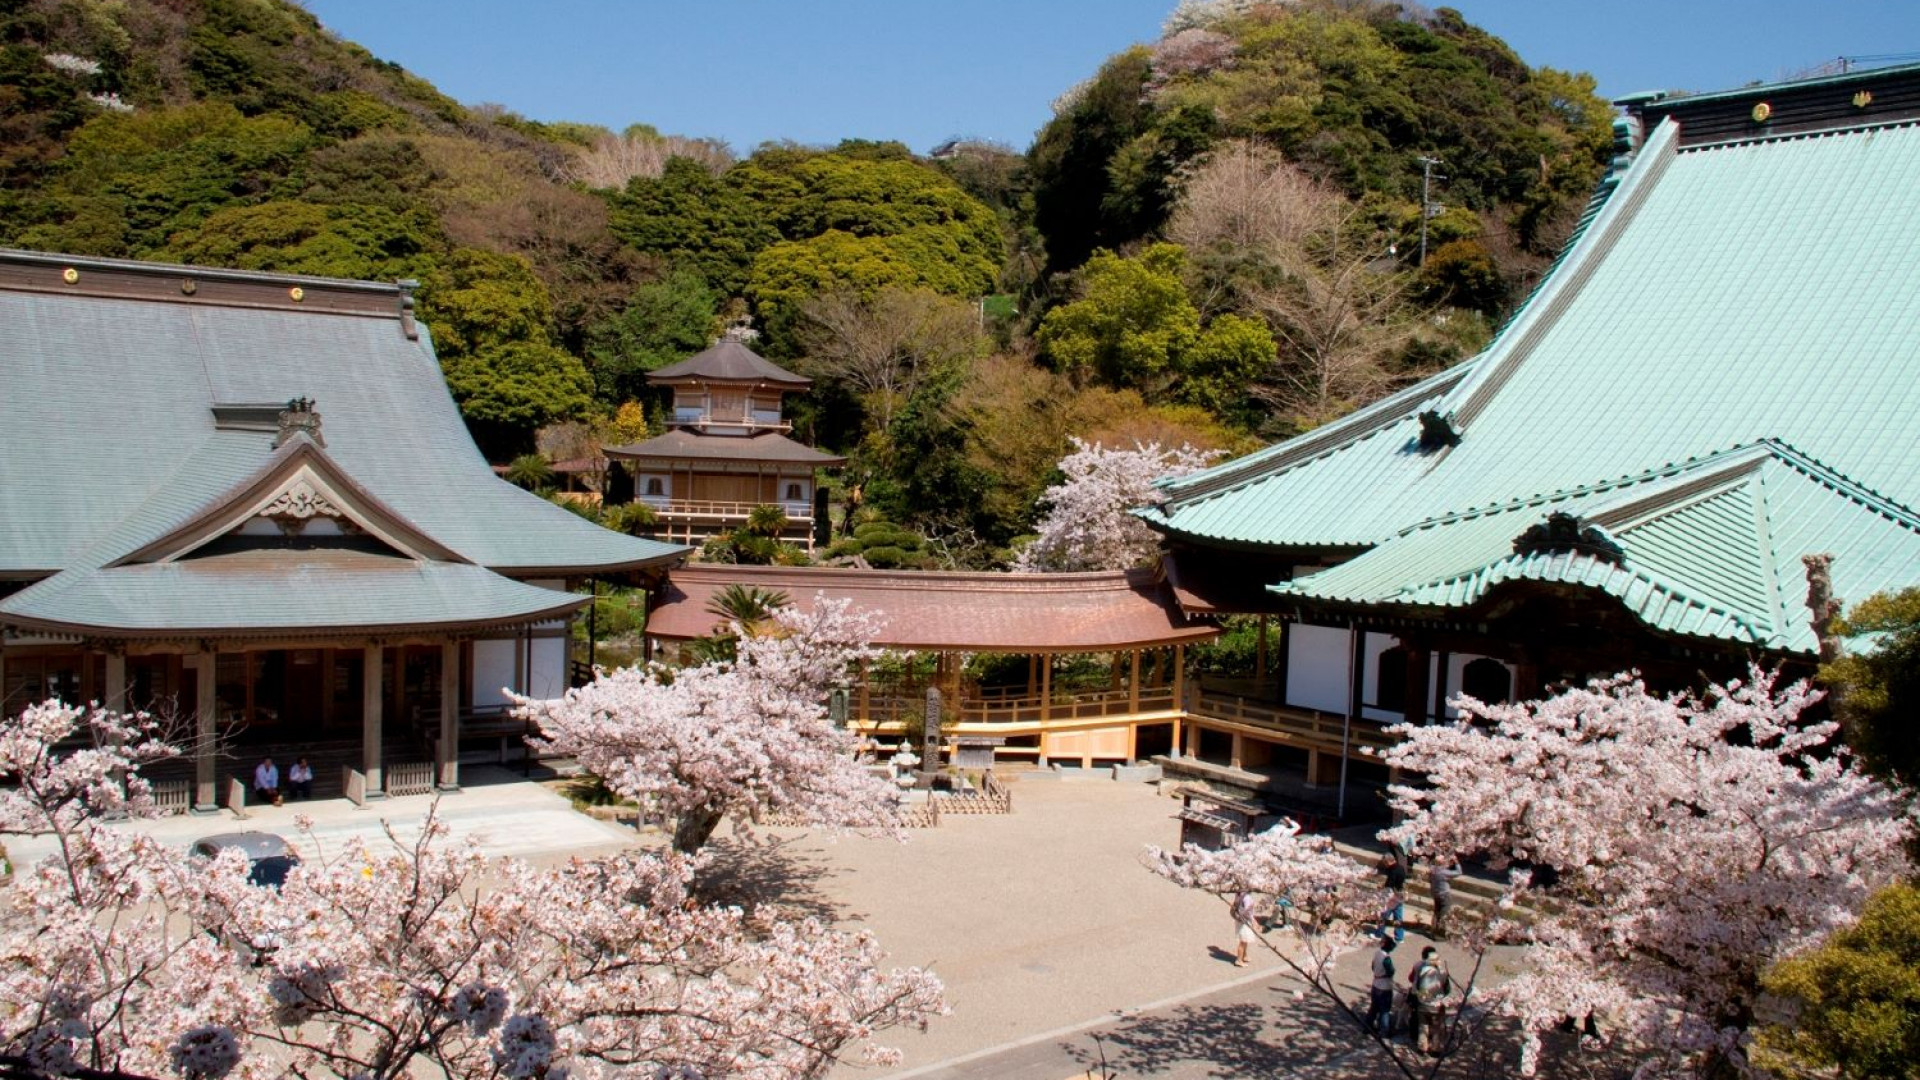 Komyo-ji Tempel